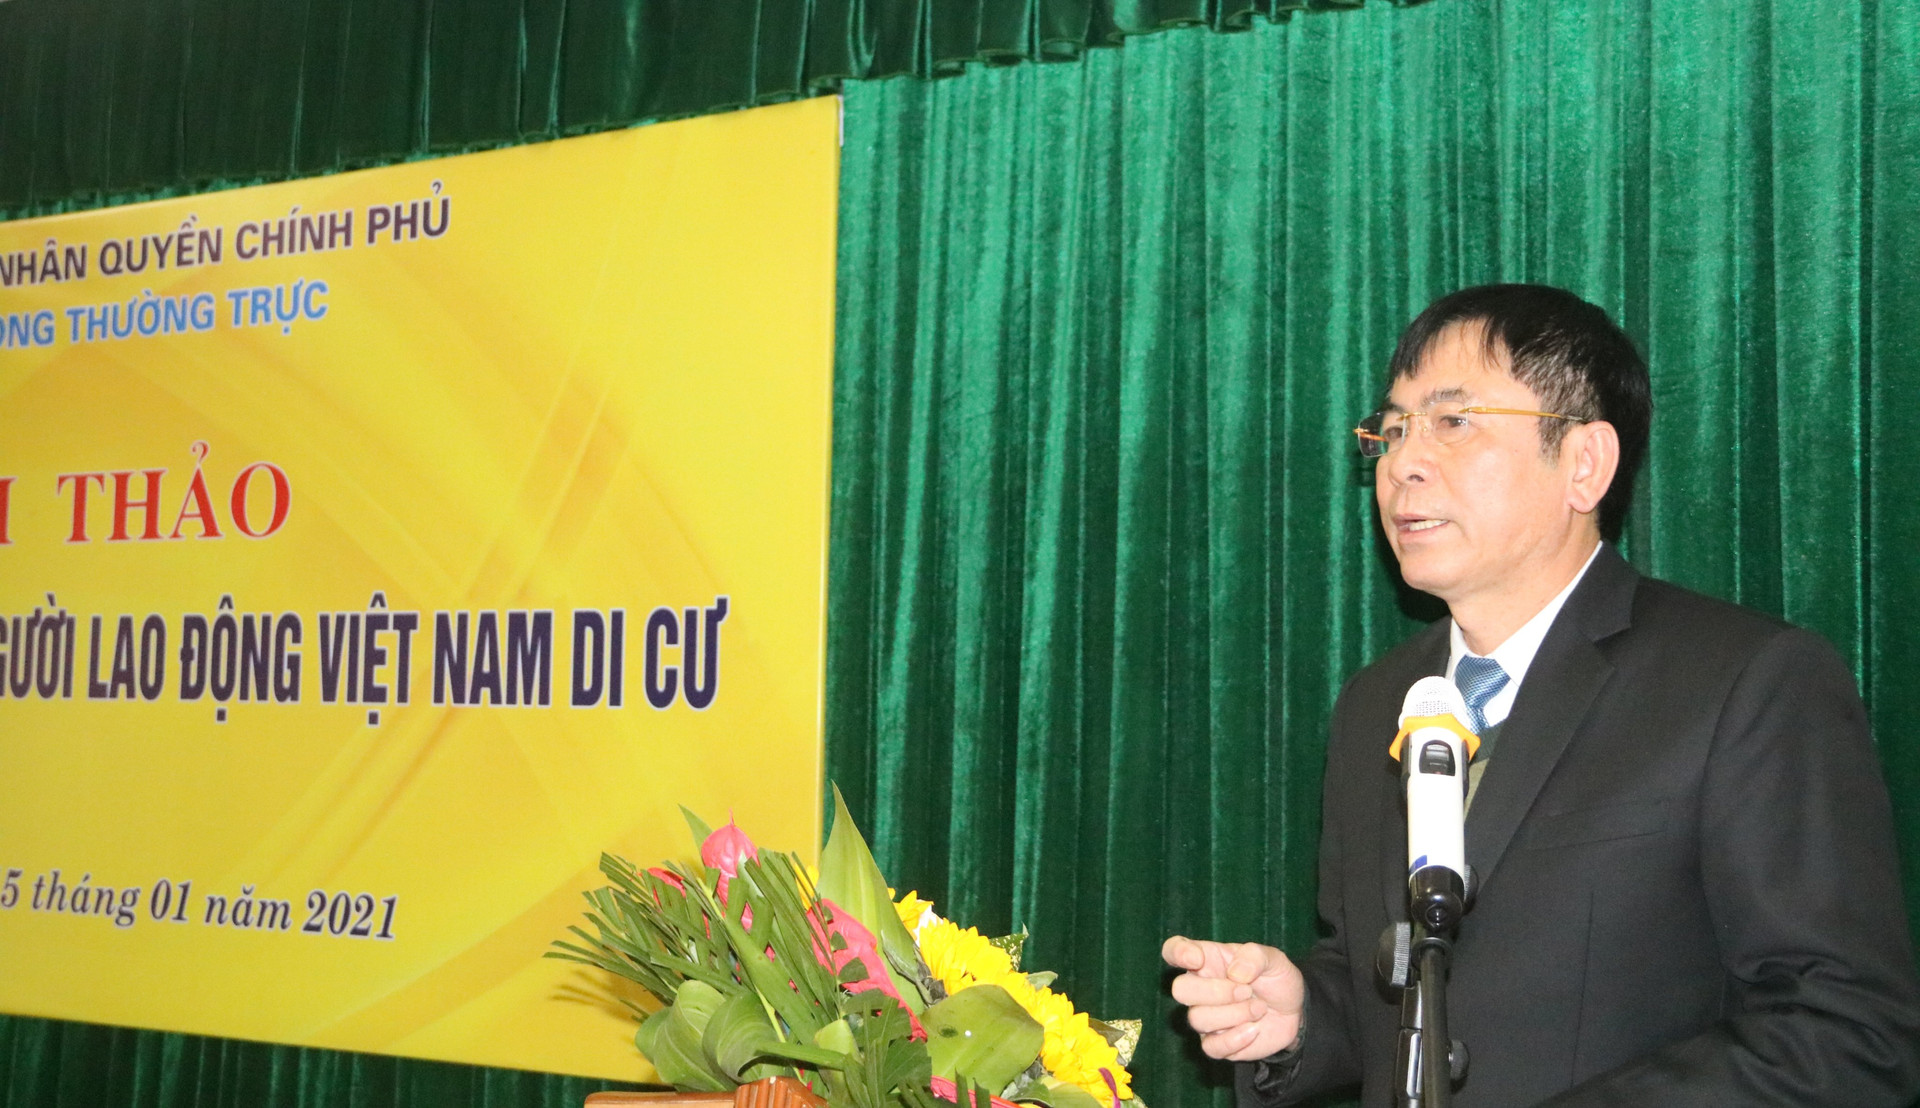 TS. Nguyễn Văn Kỷ, Phó Chánh Văn phòng Nhân quyền phát biểu tại hội thảo 